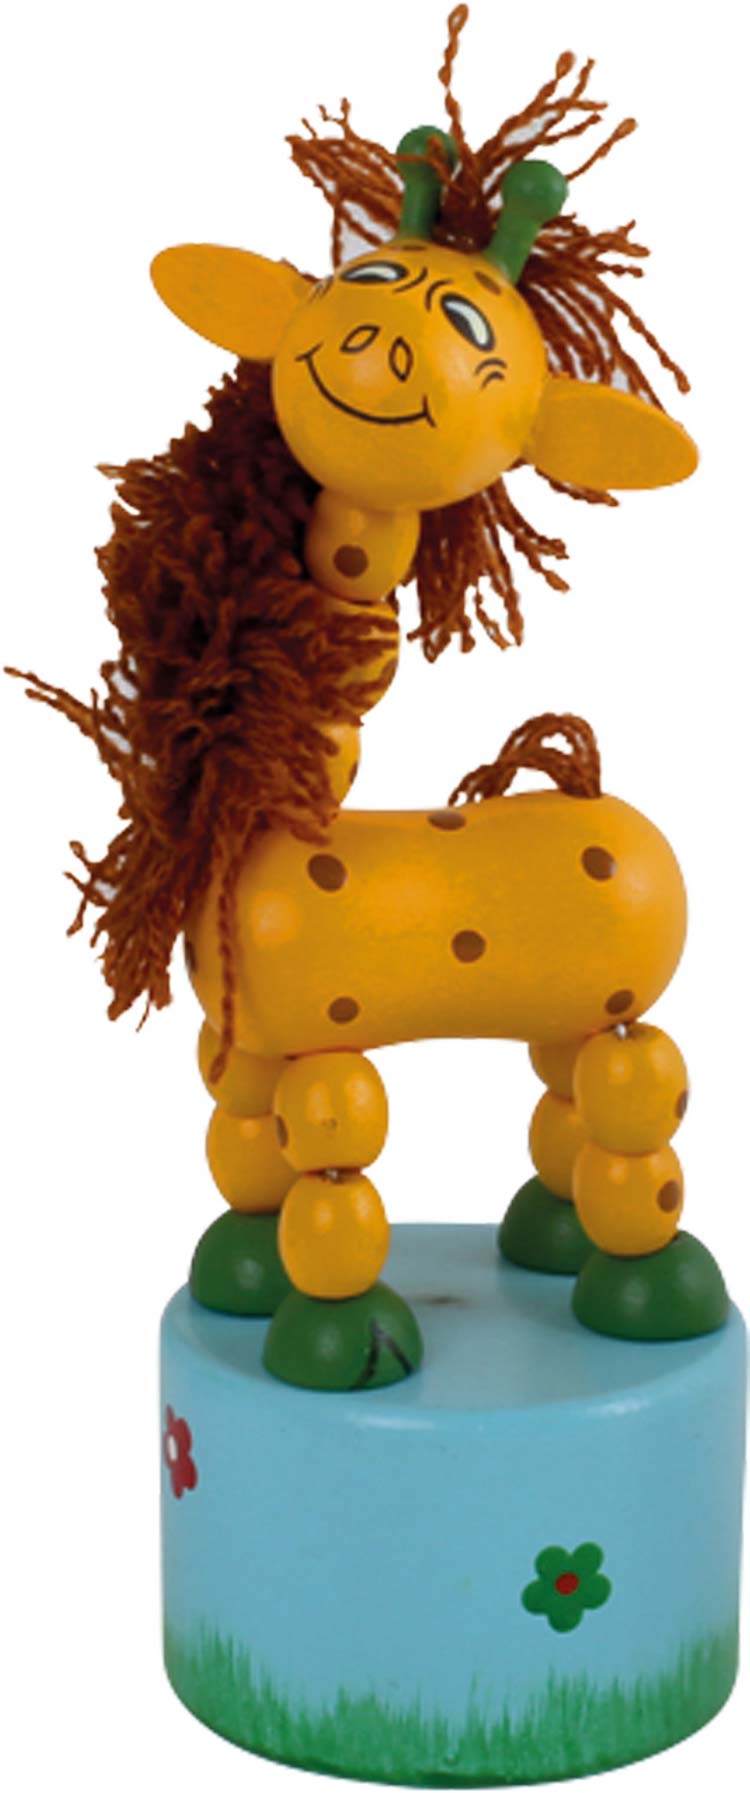 Reh Dino Hund Maus Pferd Kuh Figuren Holz Drückfigur Wackelfigur Wackeltier